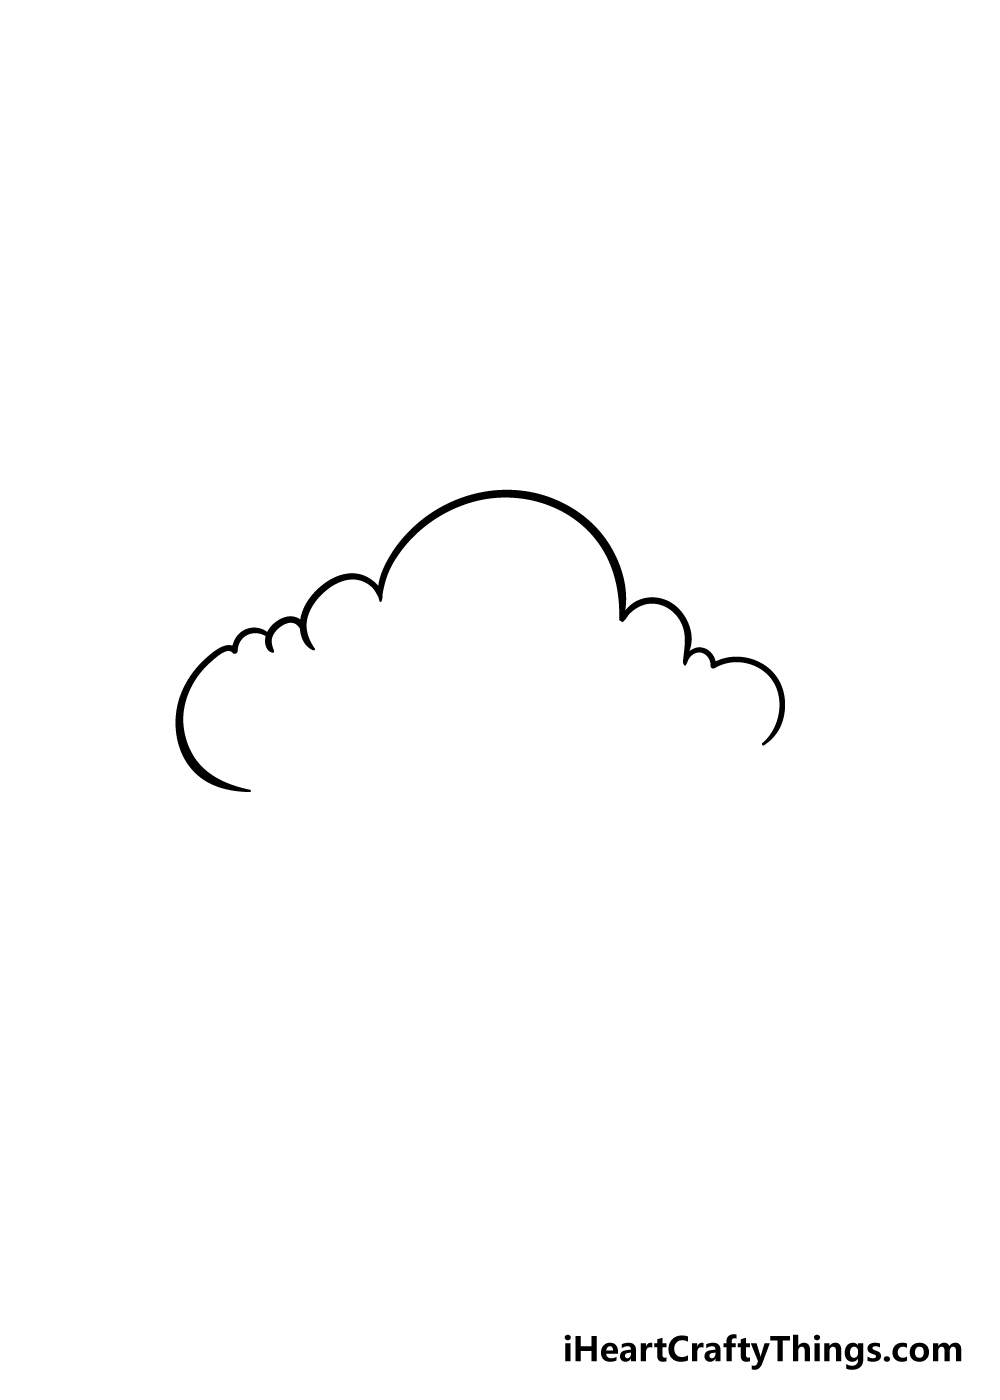 Hình vẽ đám mây đẹp - hình vẽ đám mây dễ thương